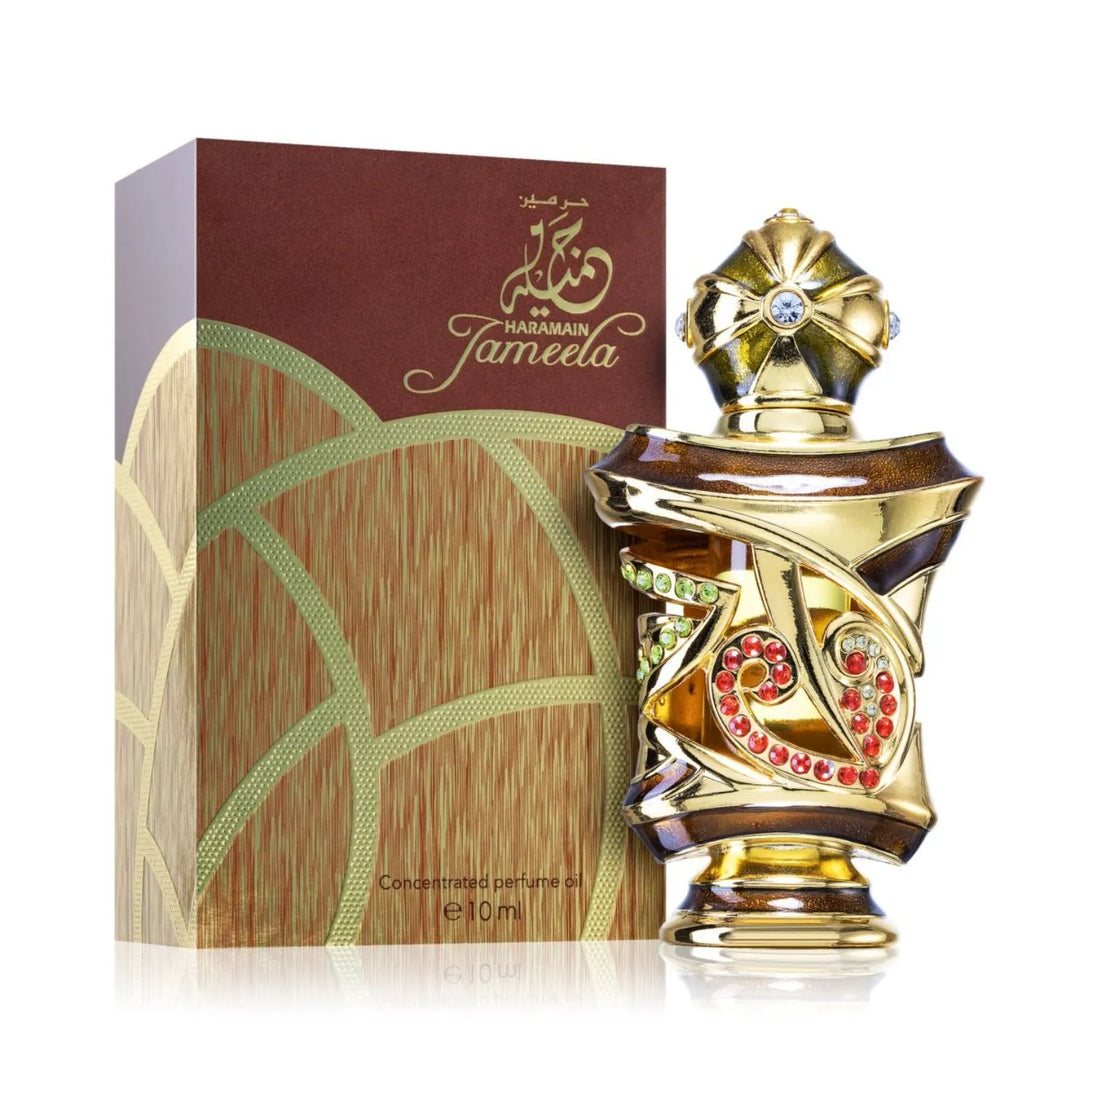 Jameela Perfume Bottle